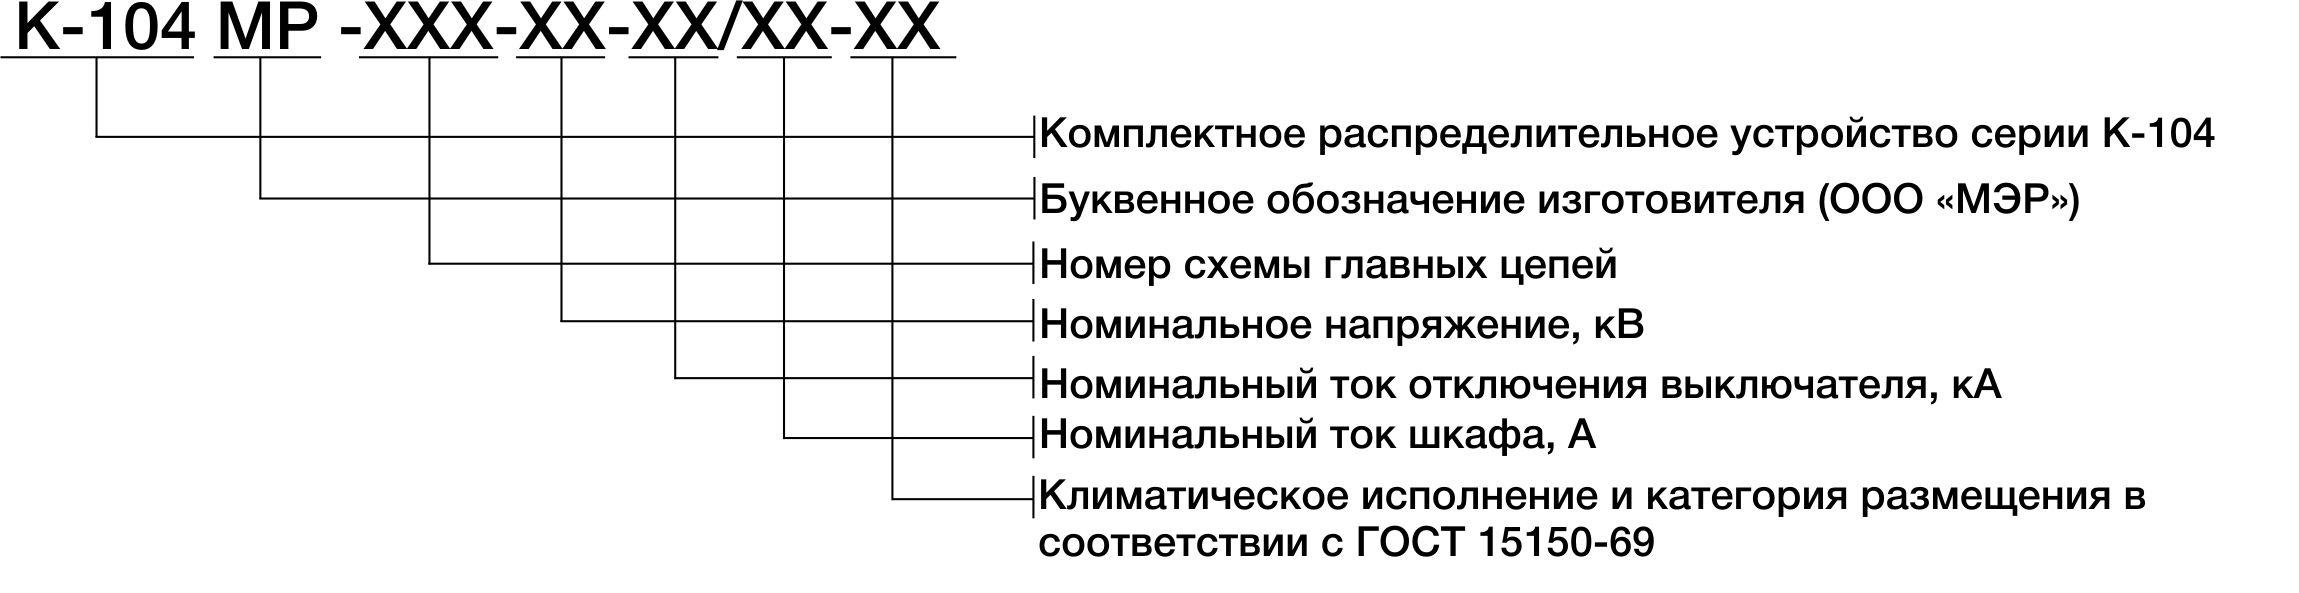 Структура условного обозначения КРУ серии К-104МР